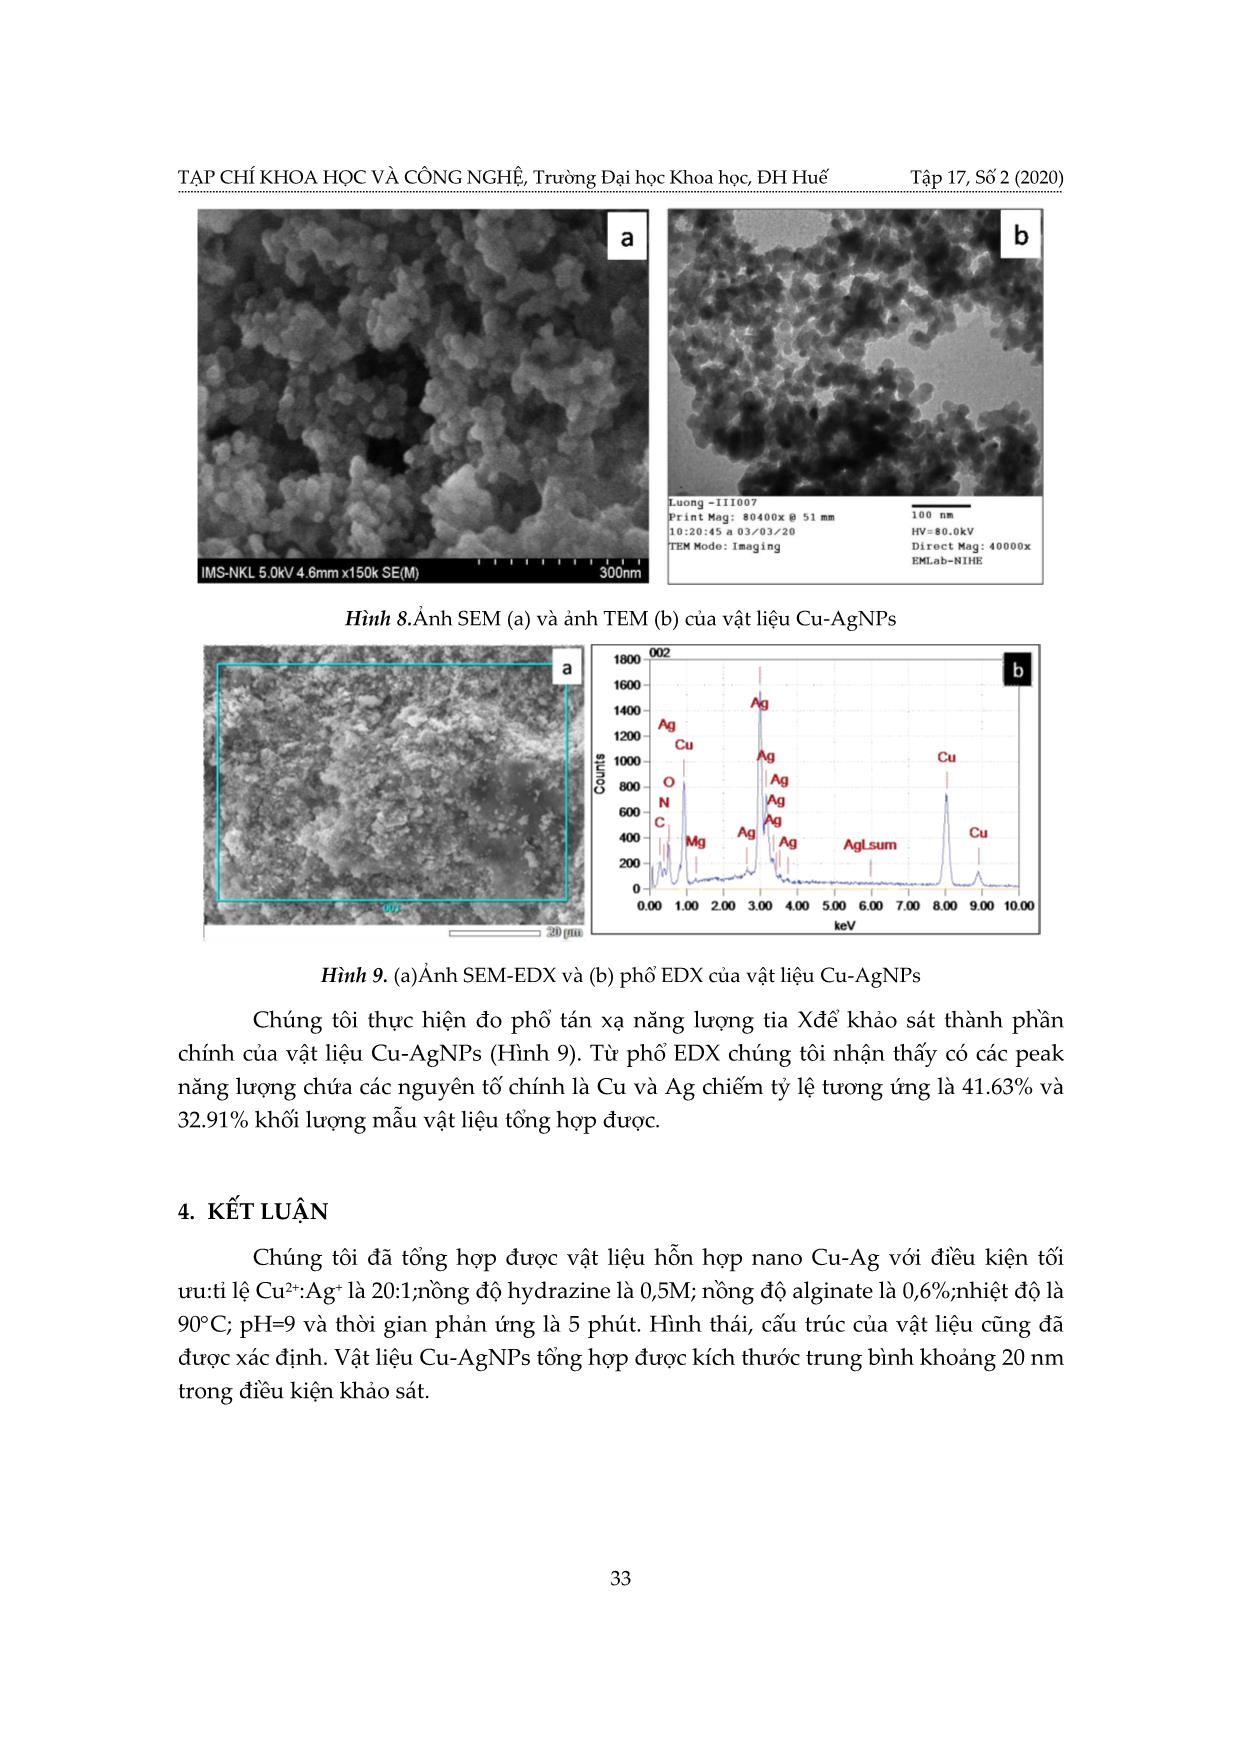 Nghiên cứu tổng hợp vật liệu hỗn hợp nano Cu - Ag trang 9